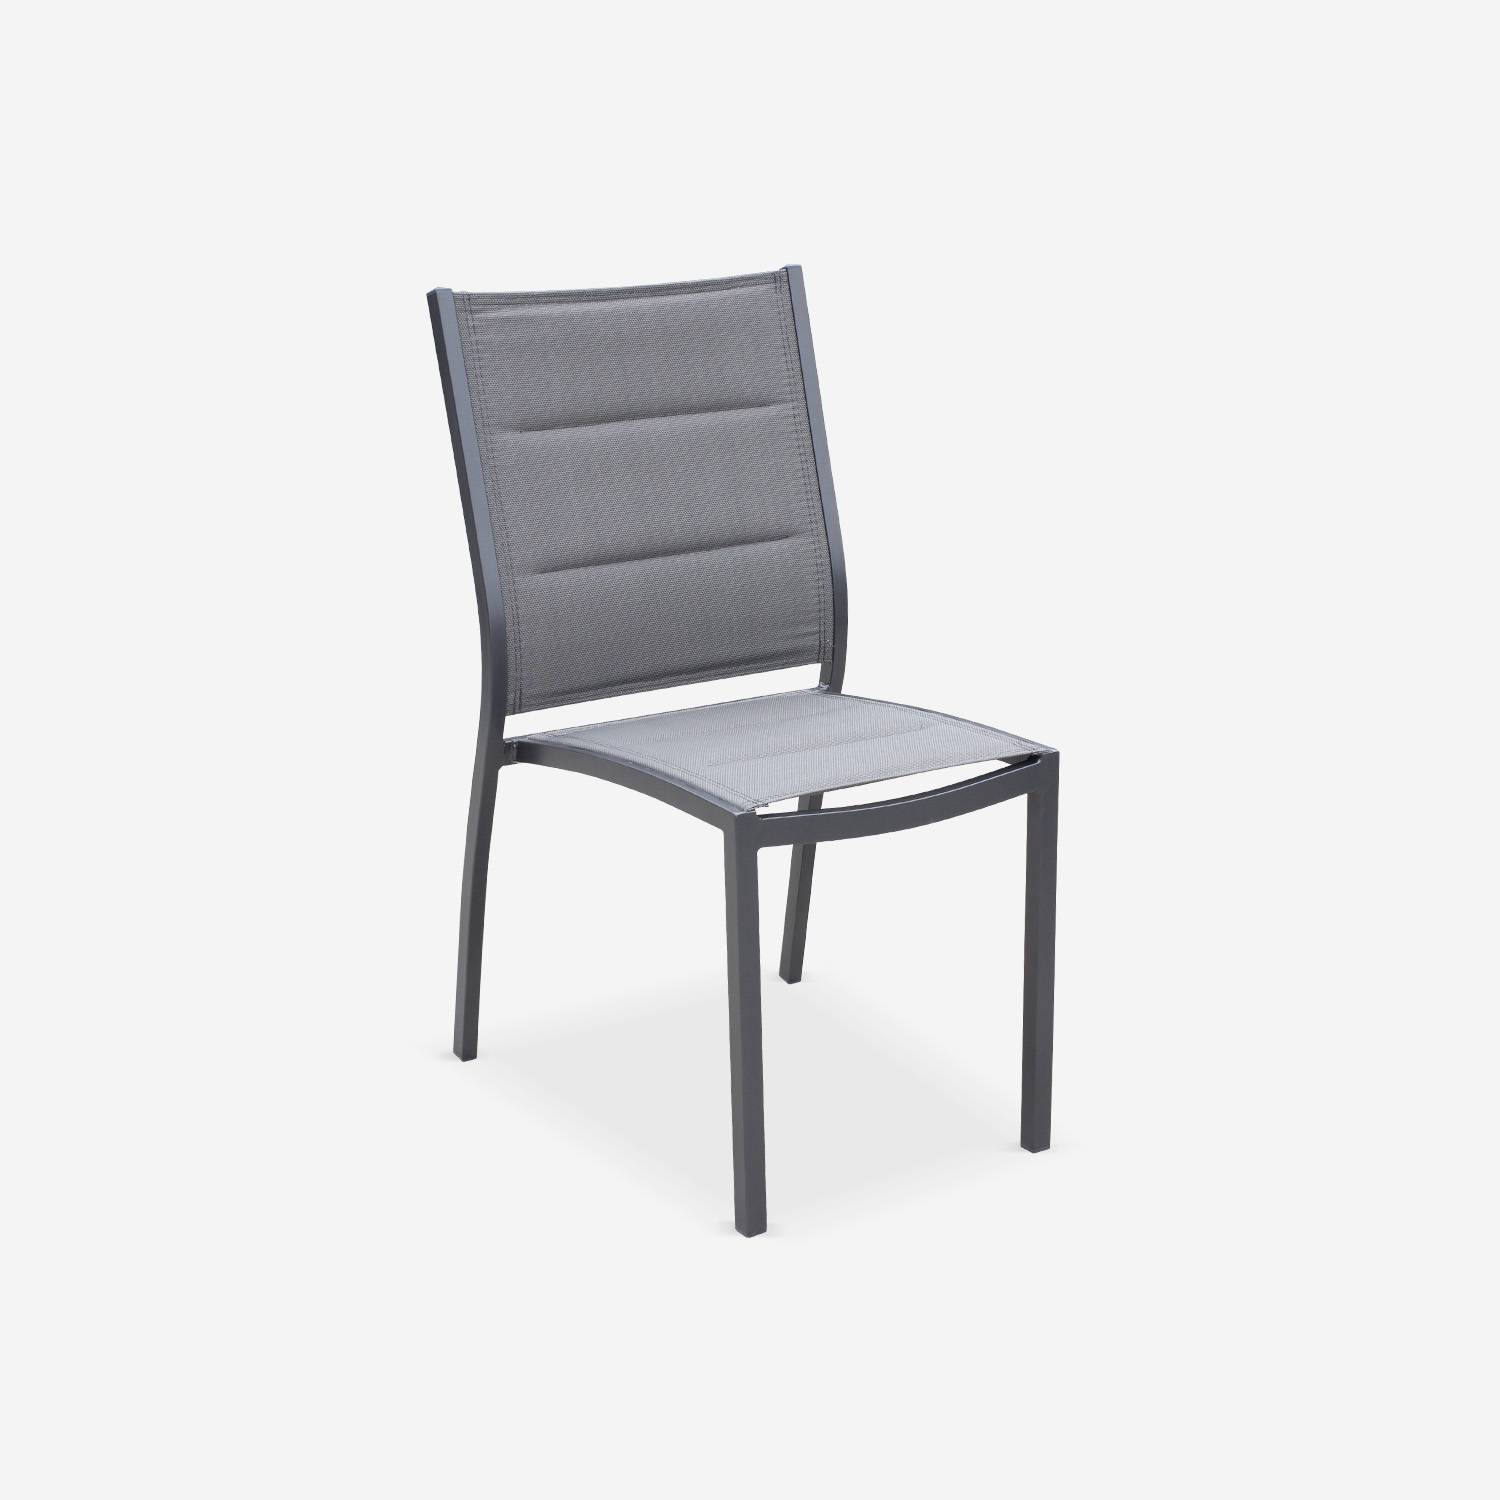 Lot de 2 chaises - Chicago / Odenton Anthracite - En aluminium anthracite et textilène gris taupe, empilables Photo2